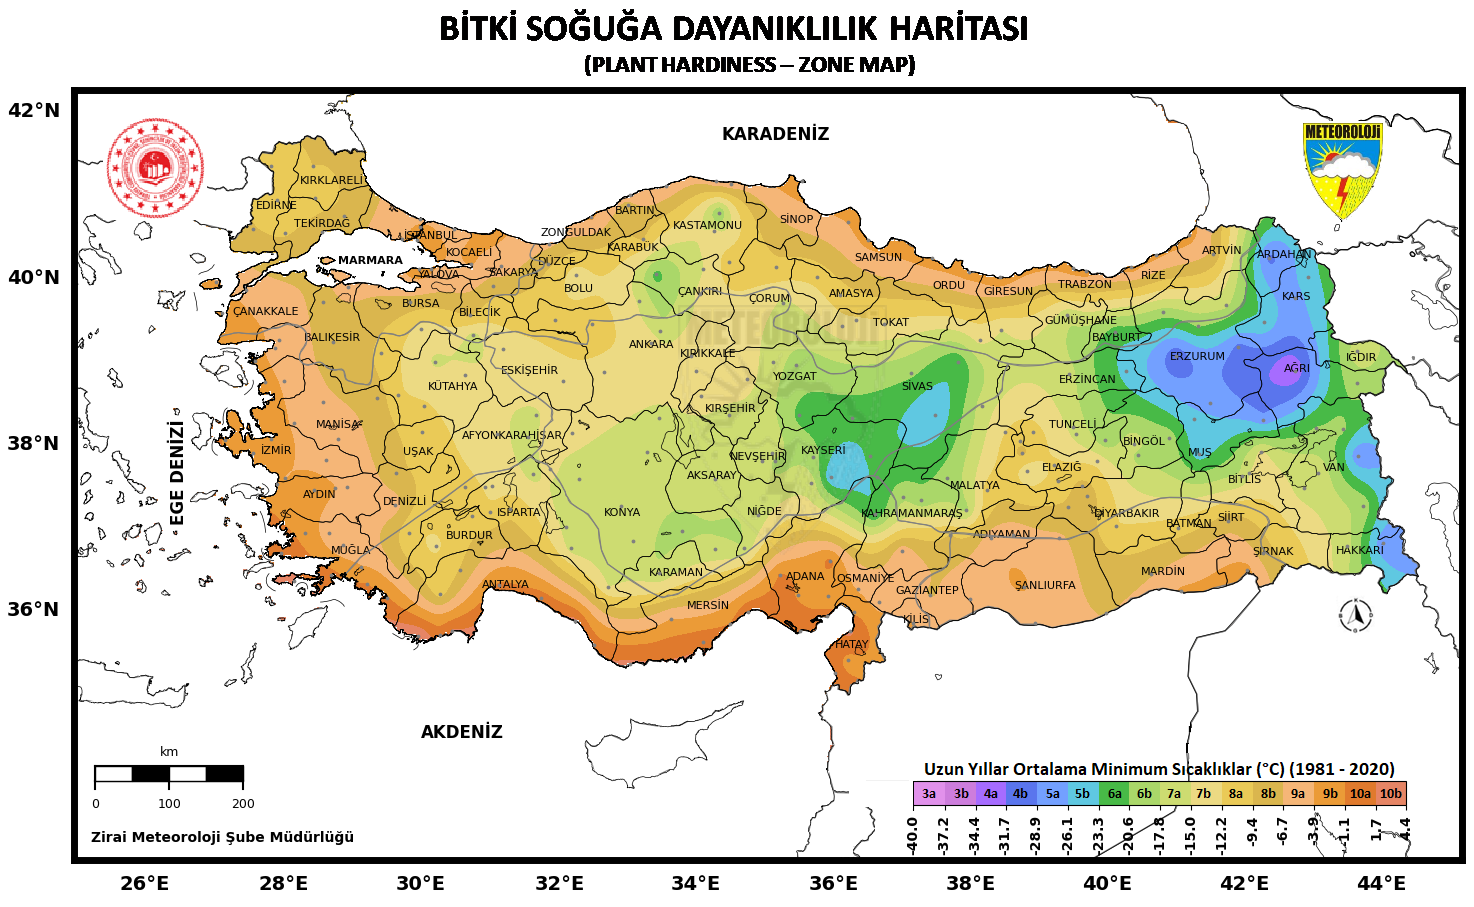 Türkiye Bitki Soğuğa Dayanıklılık Haritası